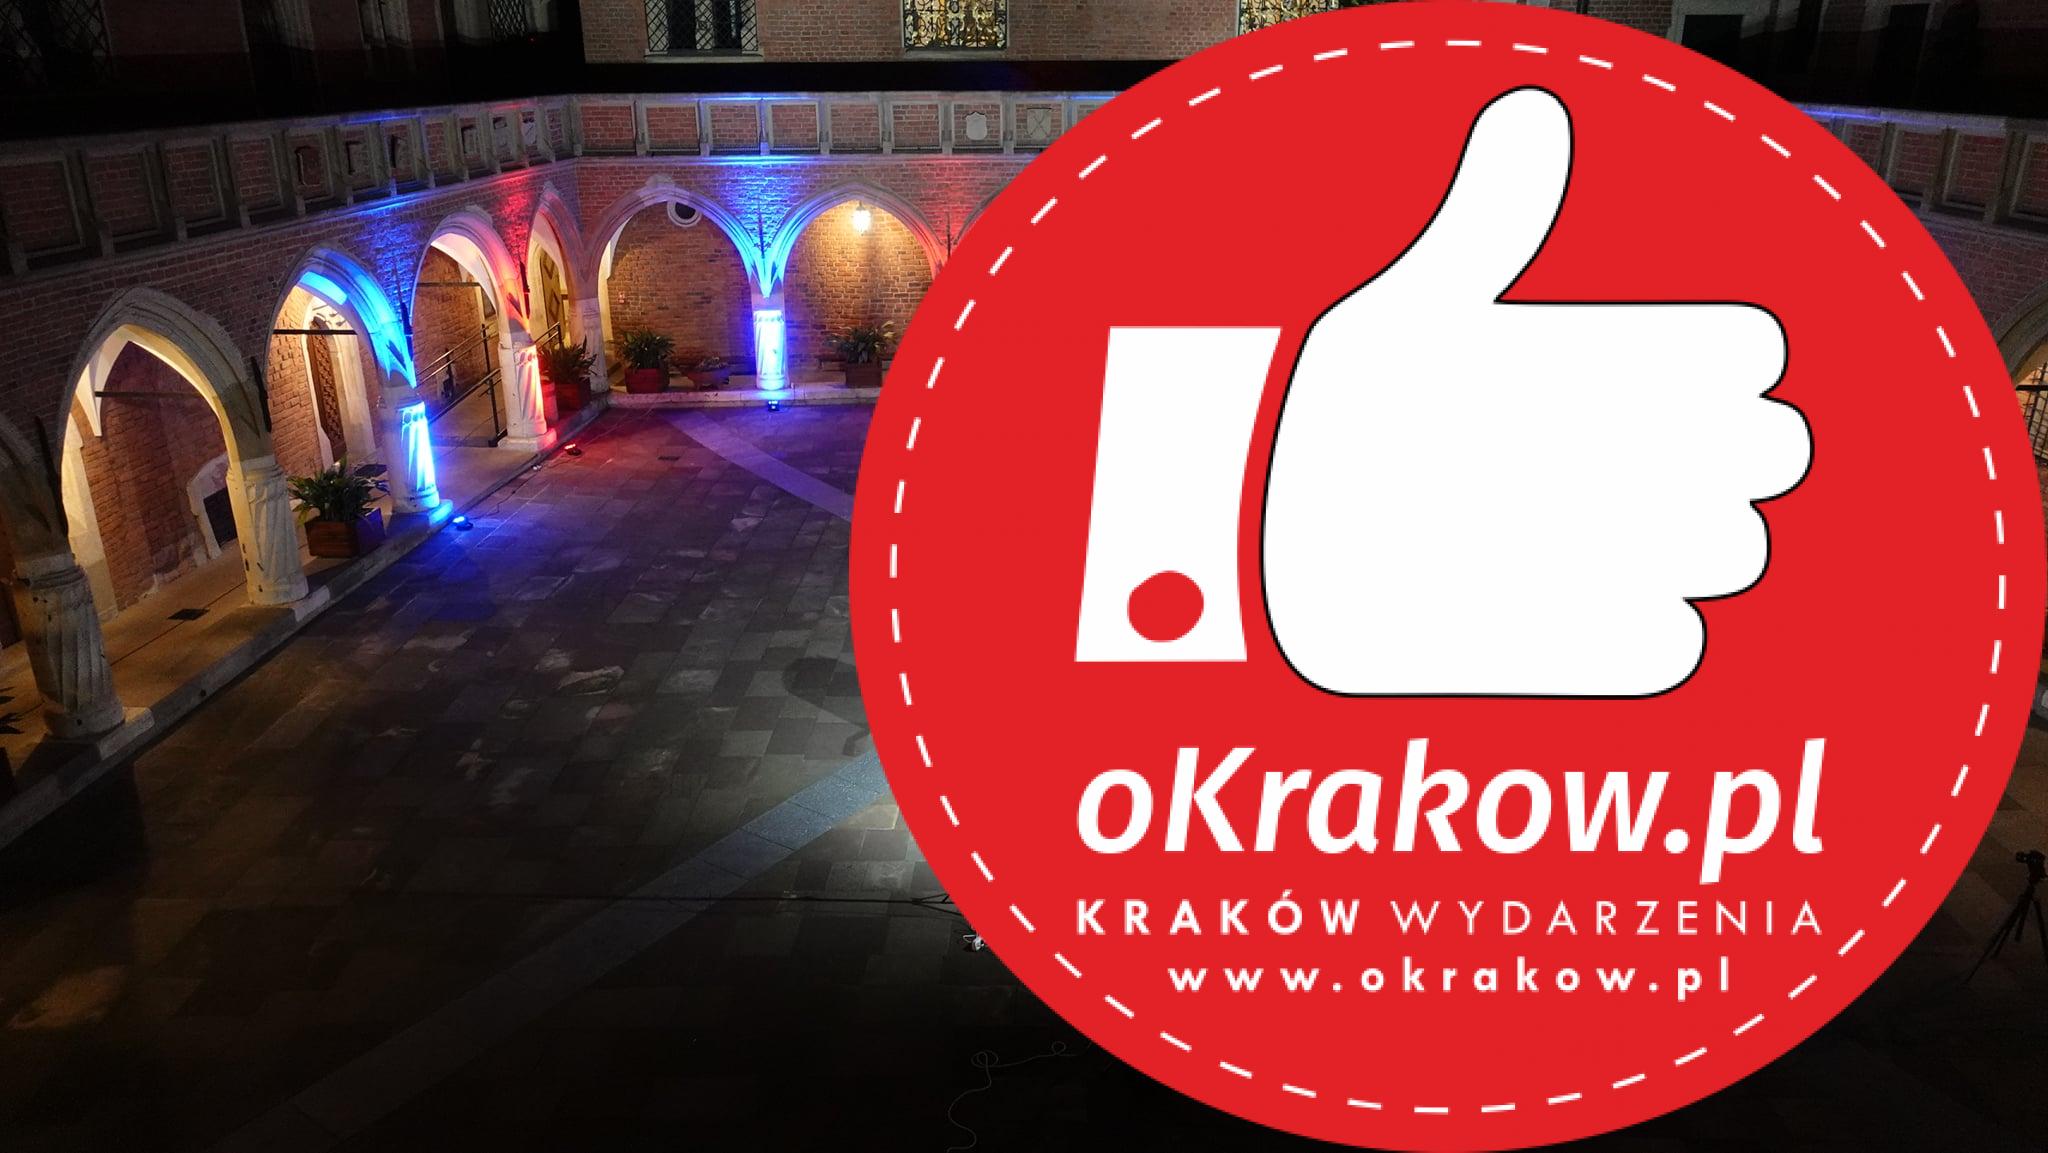 250132539 4577533415638710 8460368757908977521 n - Krakowska Noc Gitarowa / Guitar Night in Krakow